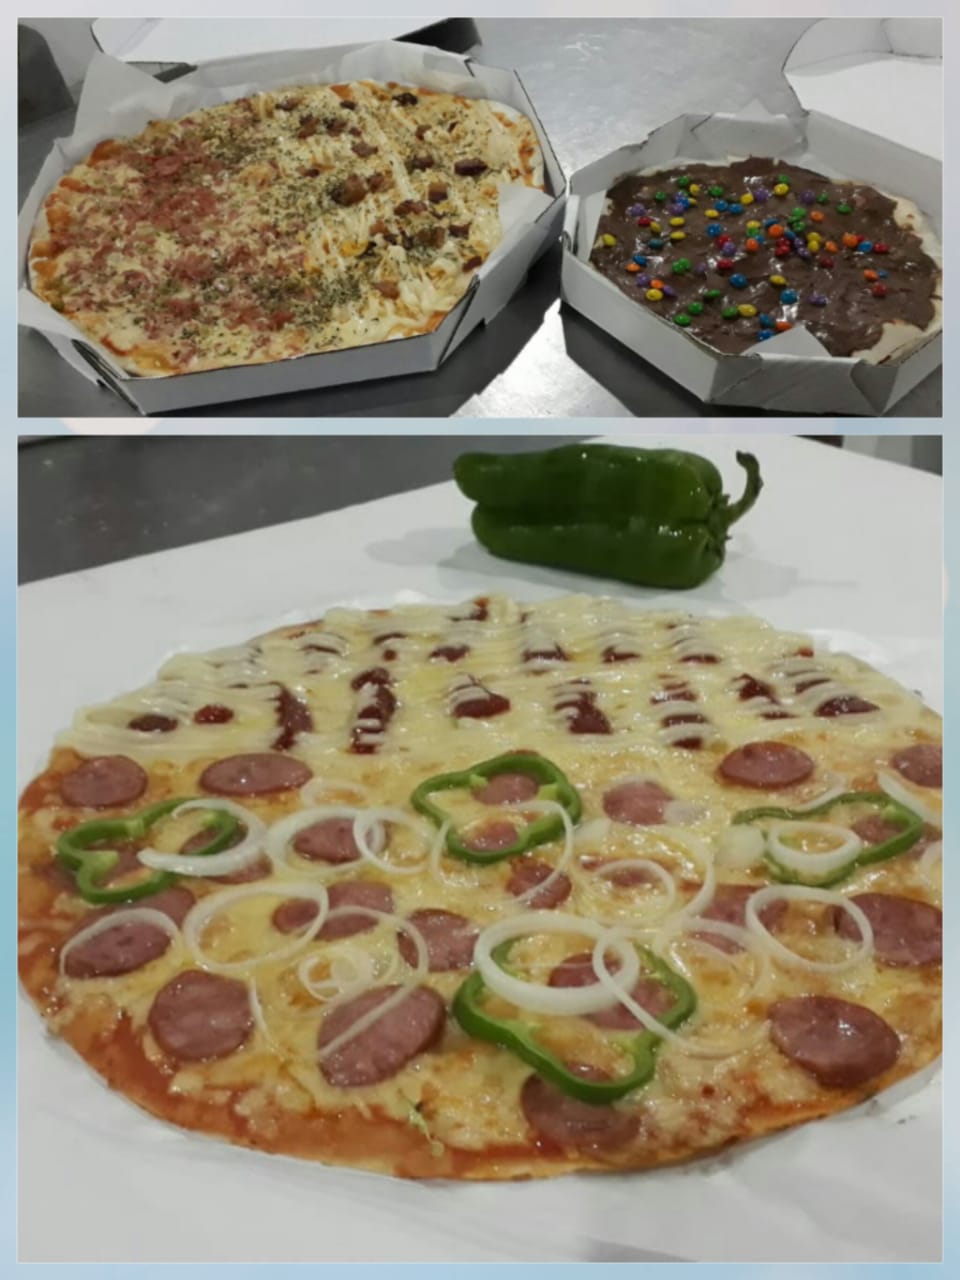 Promoção: "Casadinha Pargos e Pizza" Na compra de uma Pizza Gigante, ganhe cortesia para passar um dia no Pargos Club com 4 acompanhantes